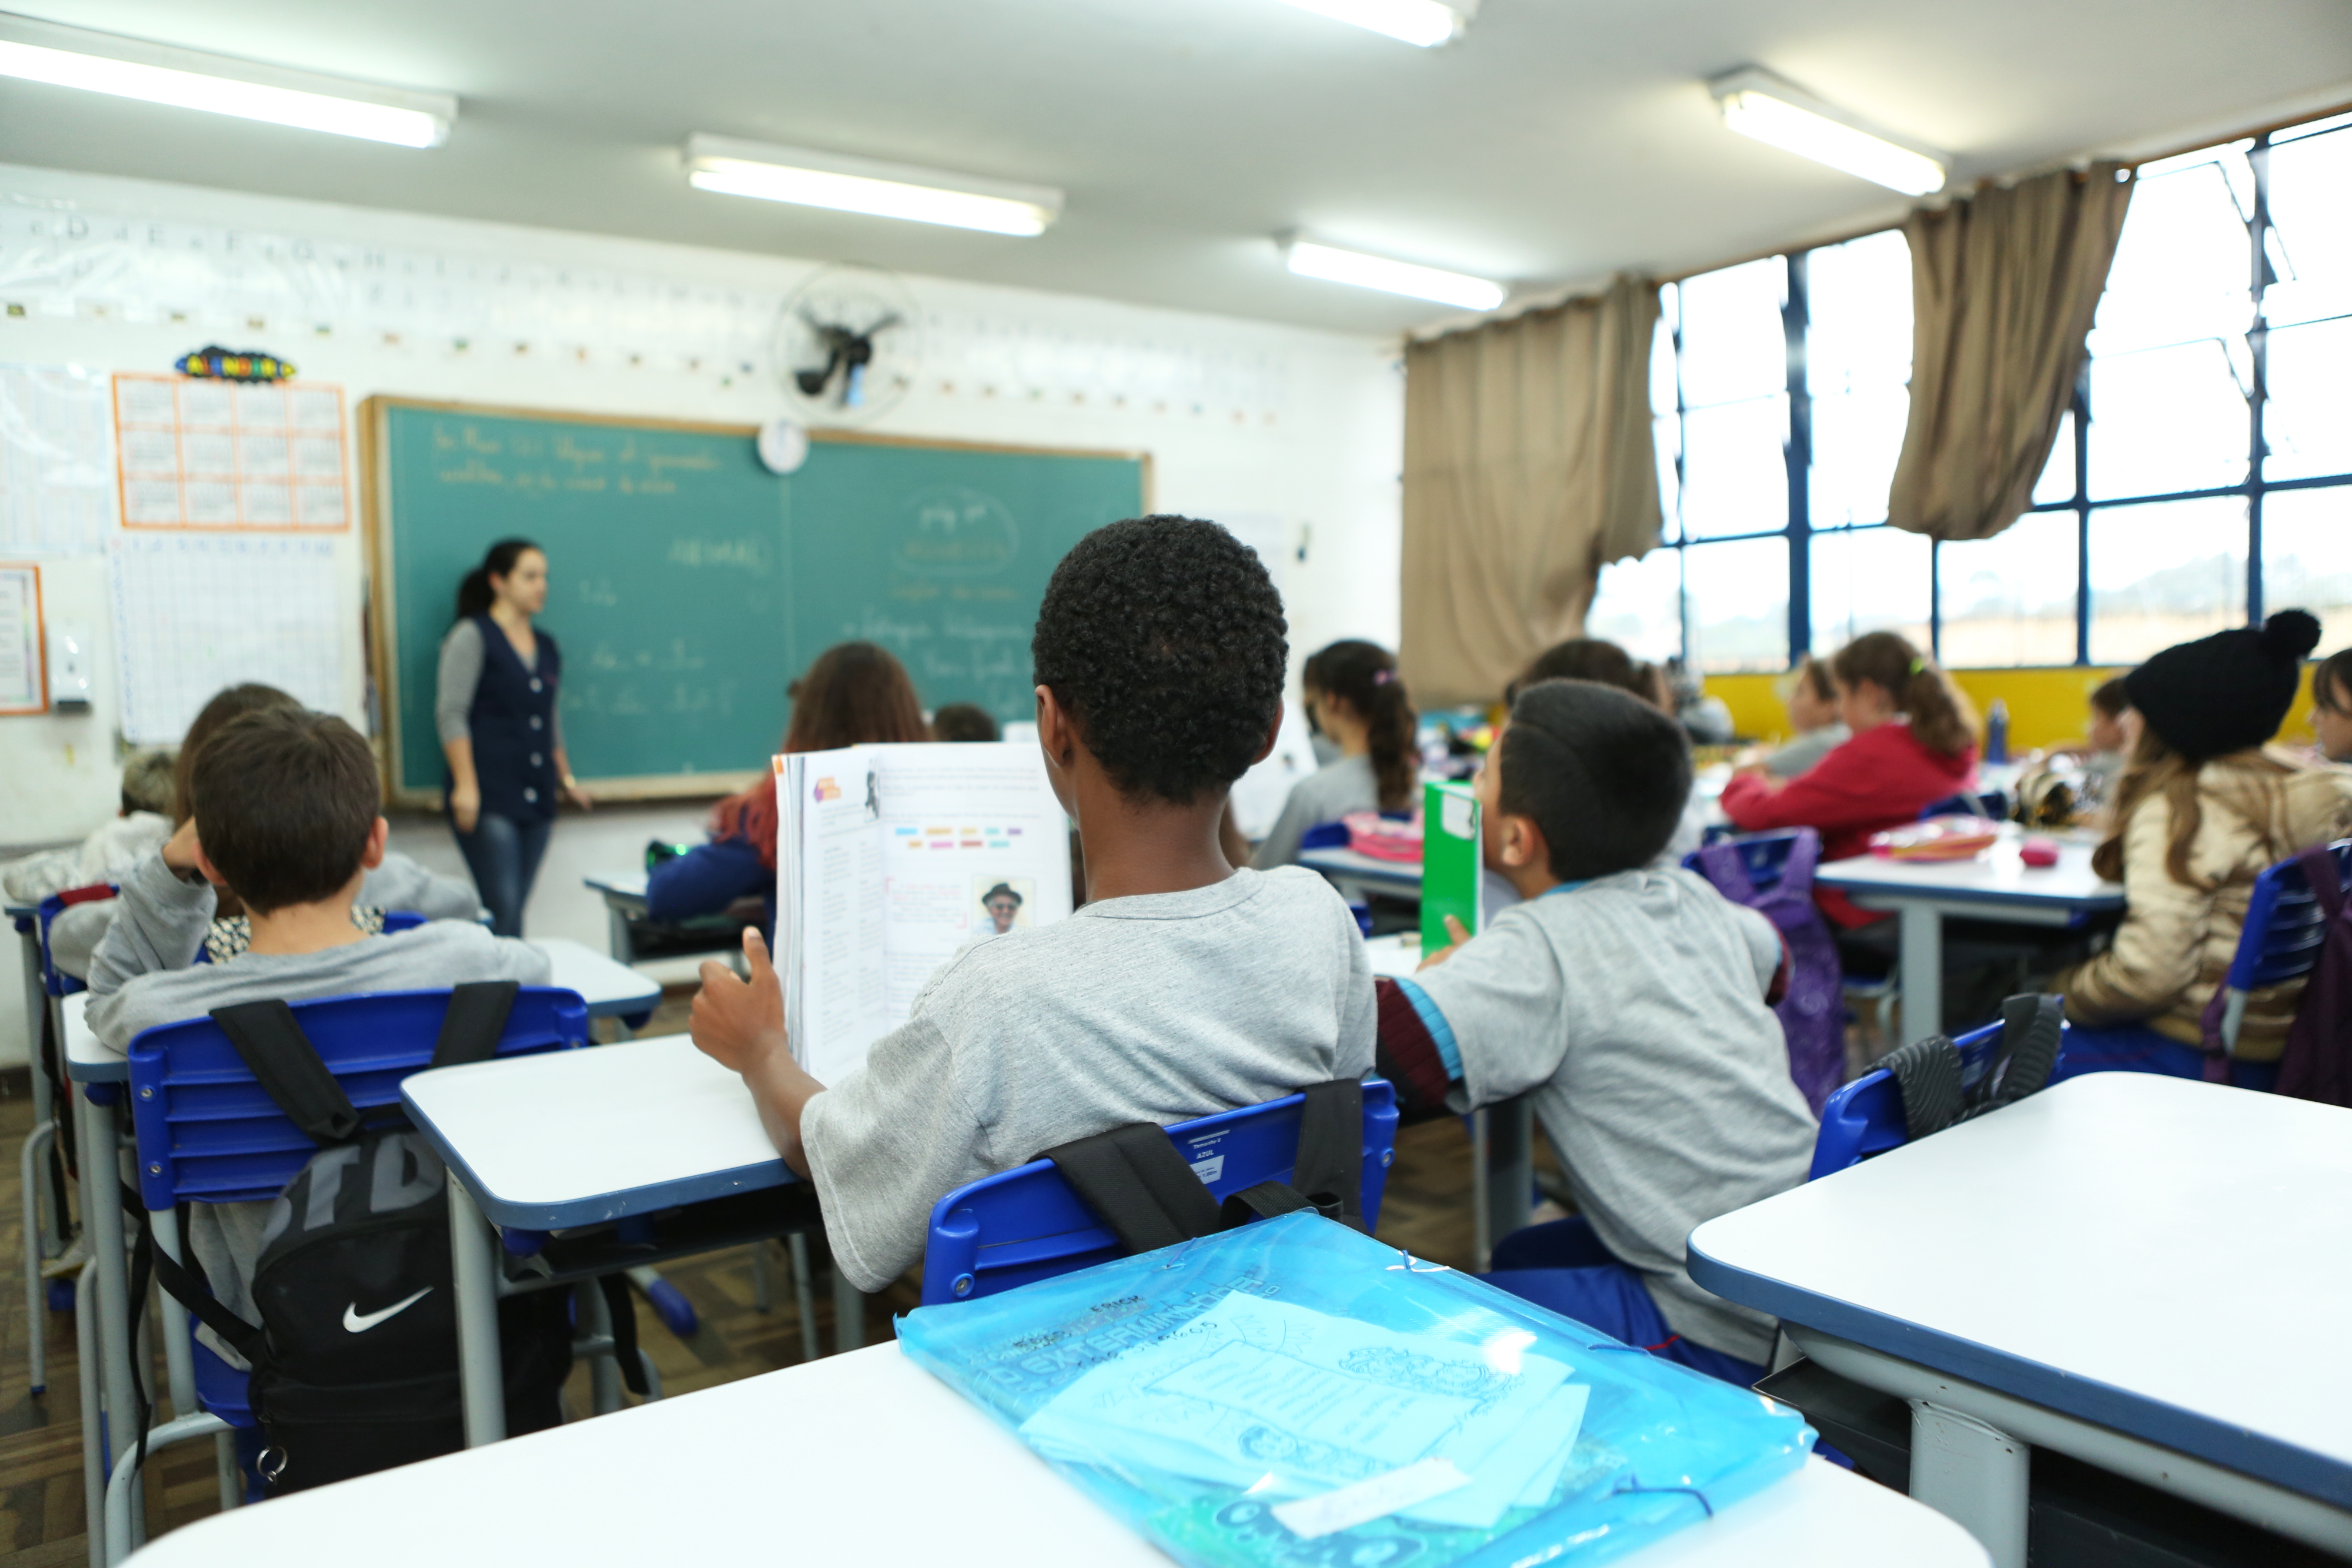 Propostas noções básicas sobre Lei Maria da Penha nas escolas municipais